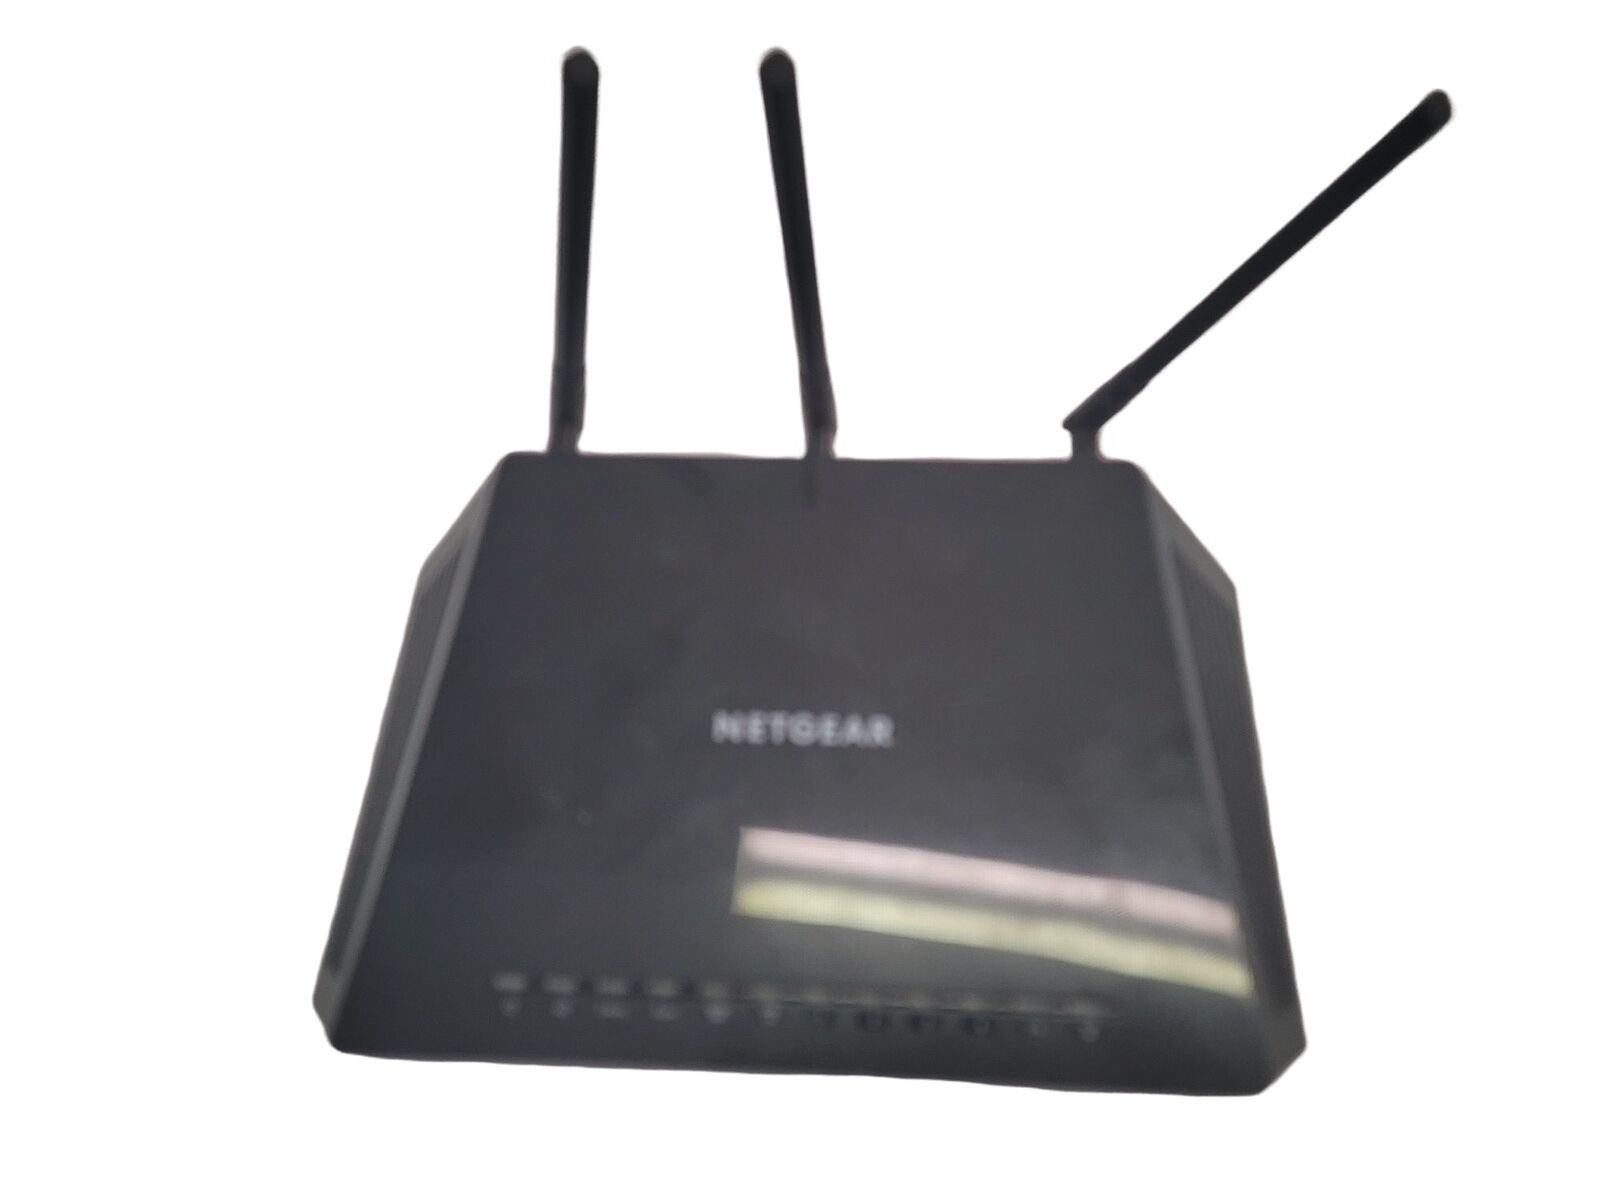 NETGEAR R6700V3 Nighthawk AC1750 Smart WiFi Router